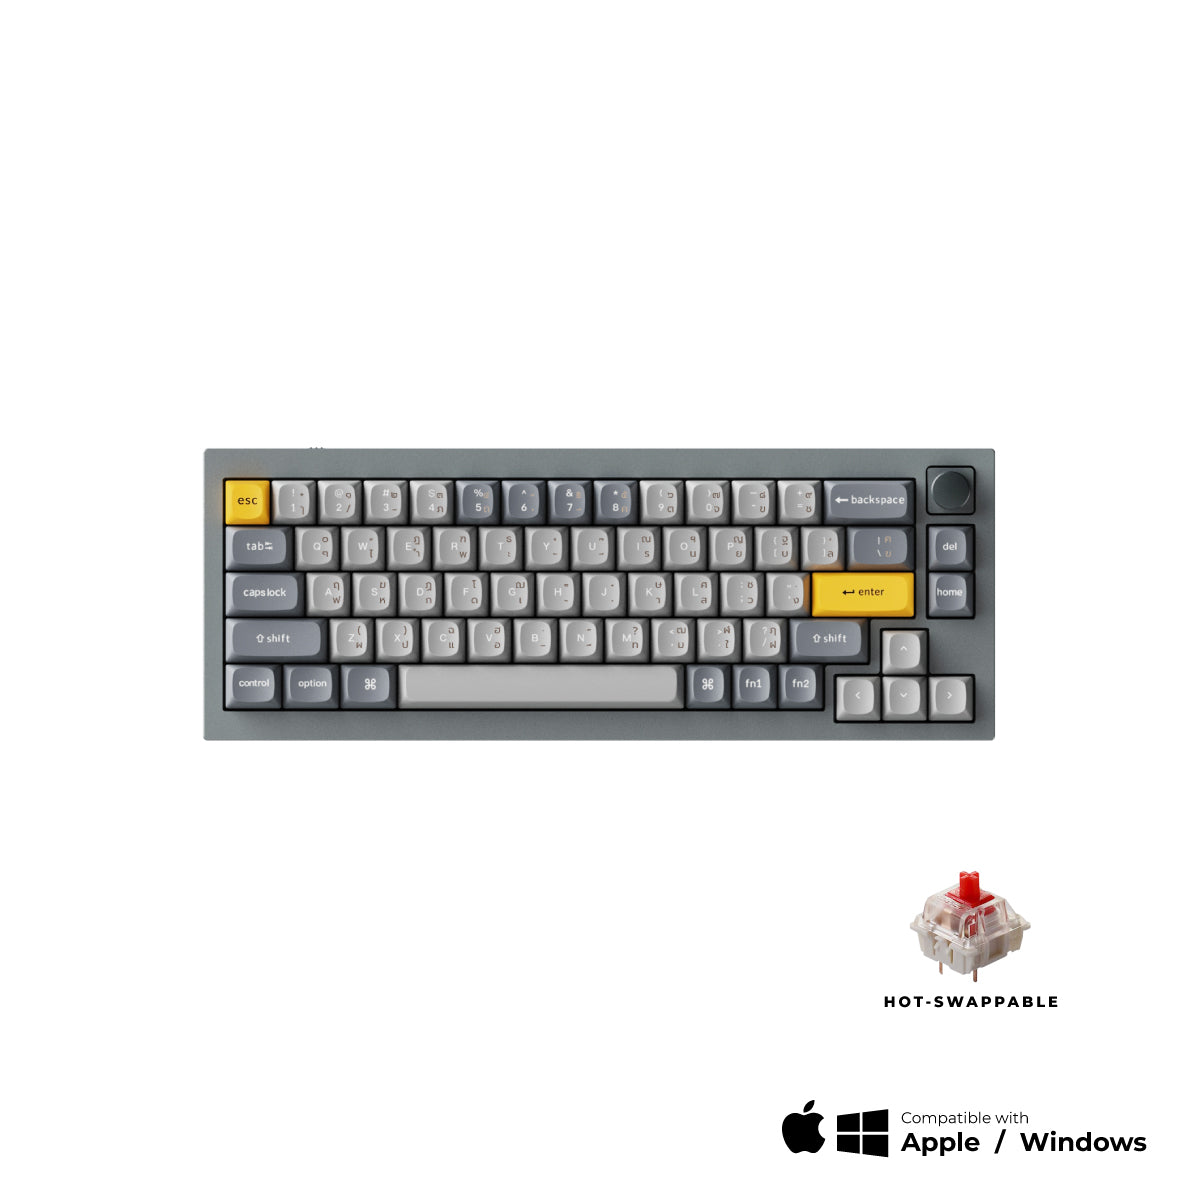 Keychron Q2 QMK Custom Mechanical Keyboard - Keychron